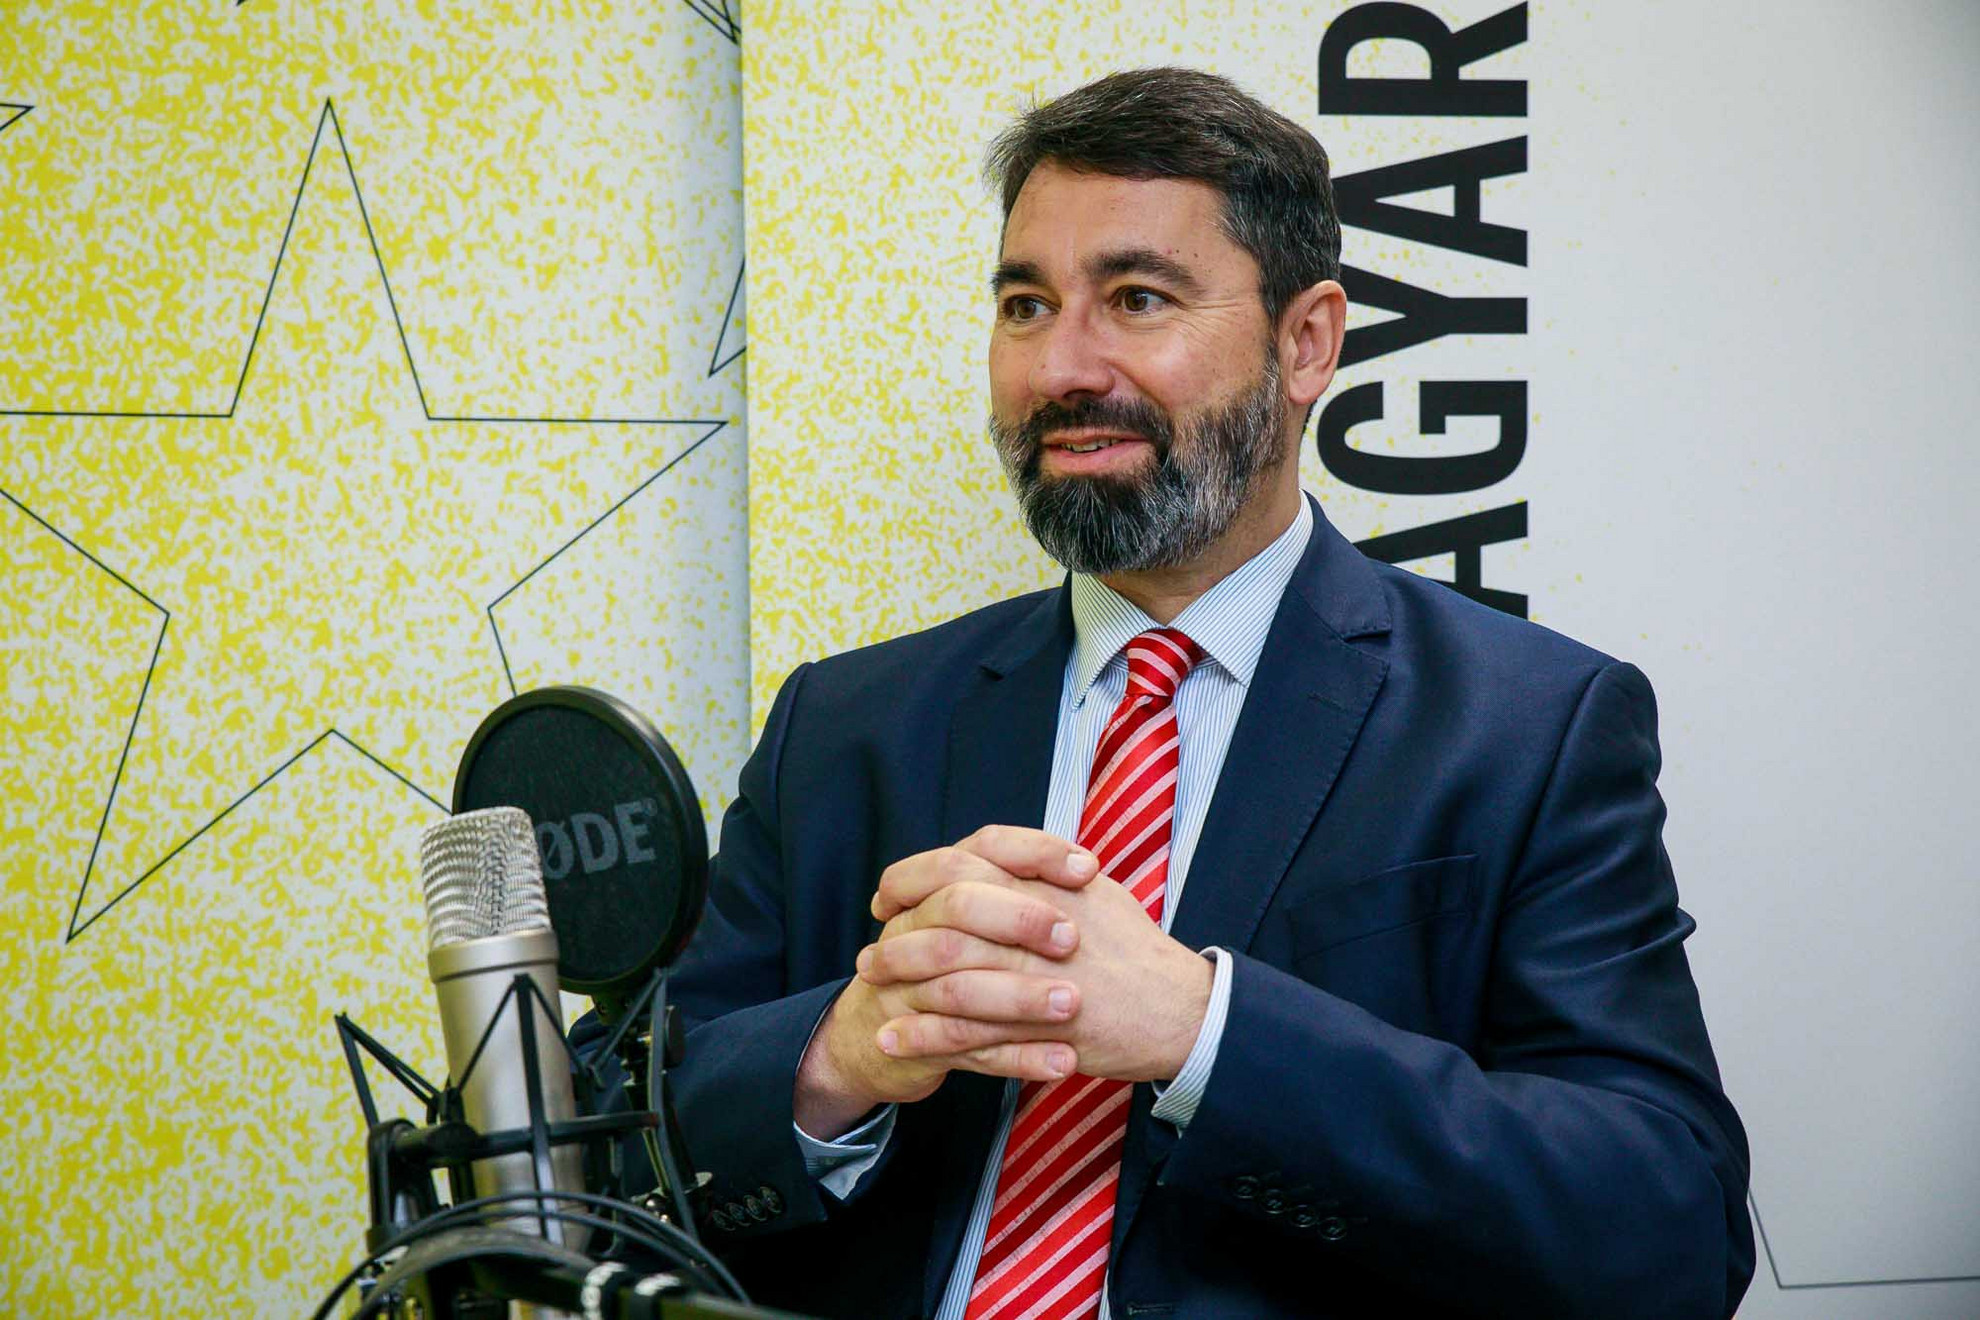 Hidvéghi Balázs, a Fidesz EP-képviselője a Faktum felvételén